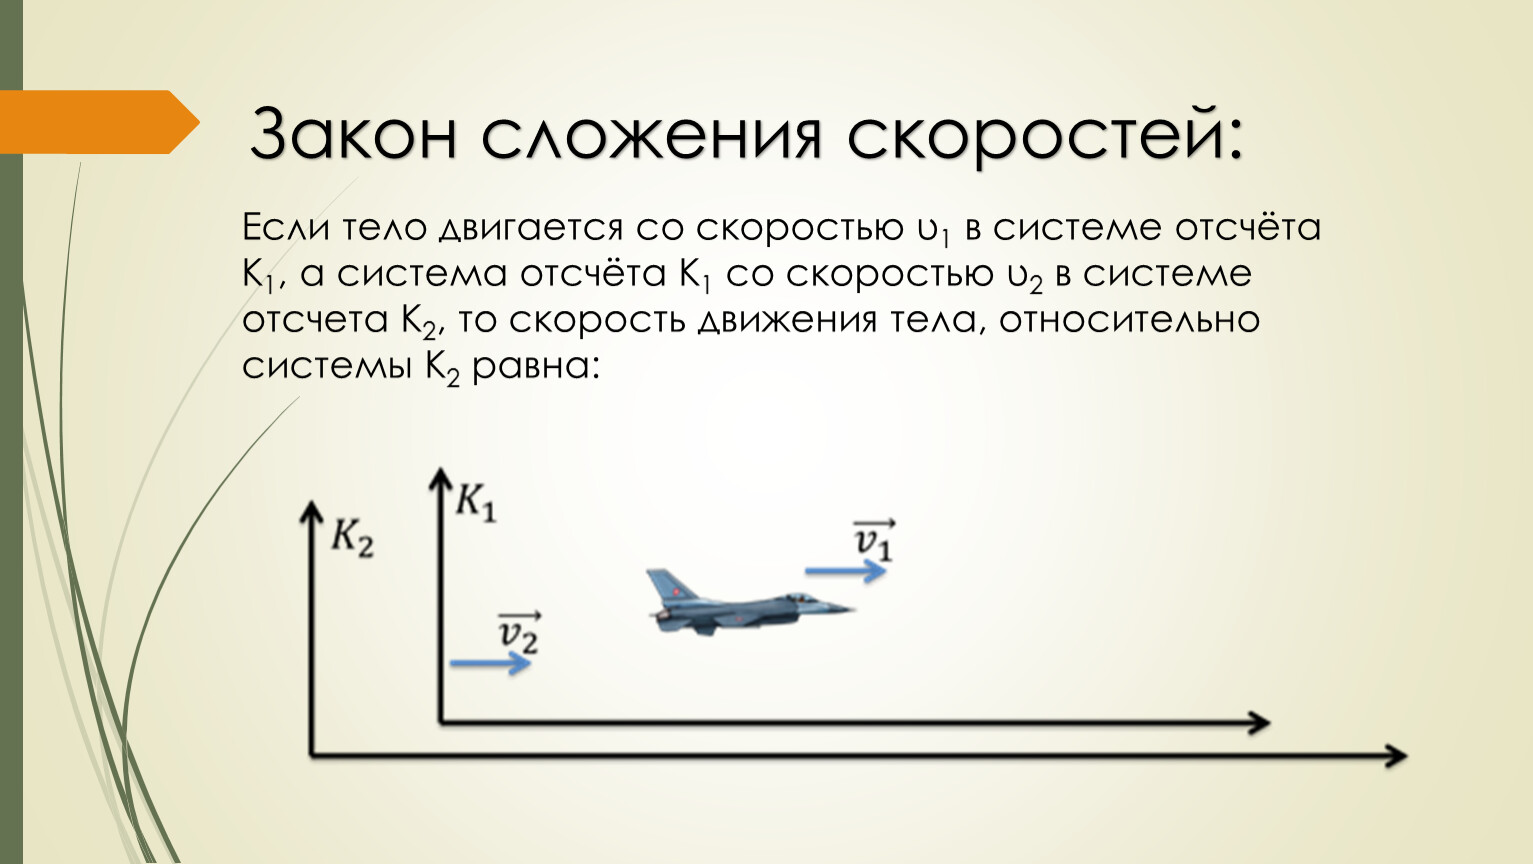 Тела движущиеся относительно земли. Скорость самолета. Самолет летит со скоростью. Скорость самолета относительно земли. Скорость самолёта пассажирского в полете.